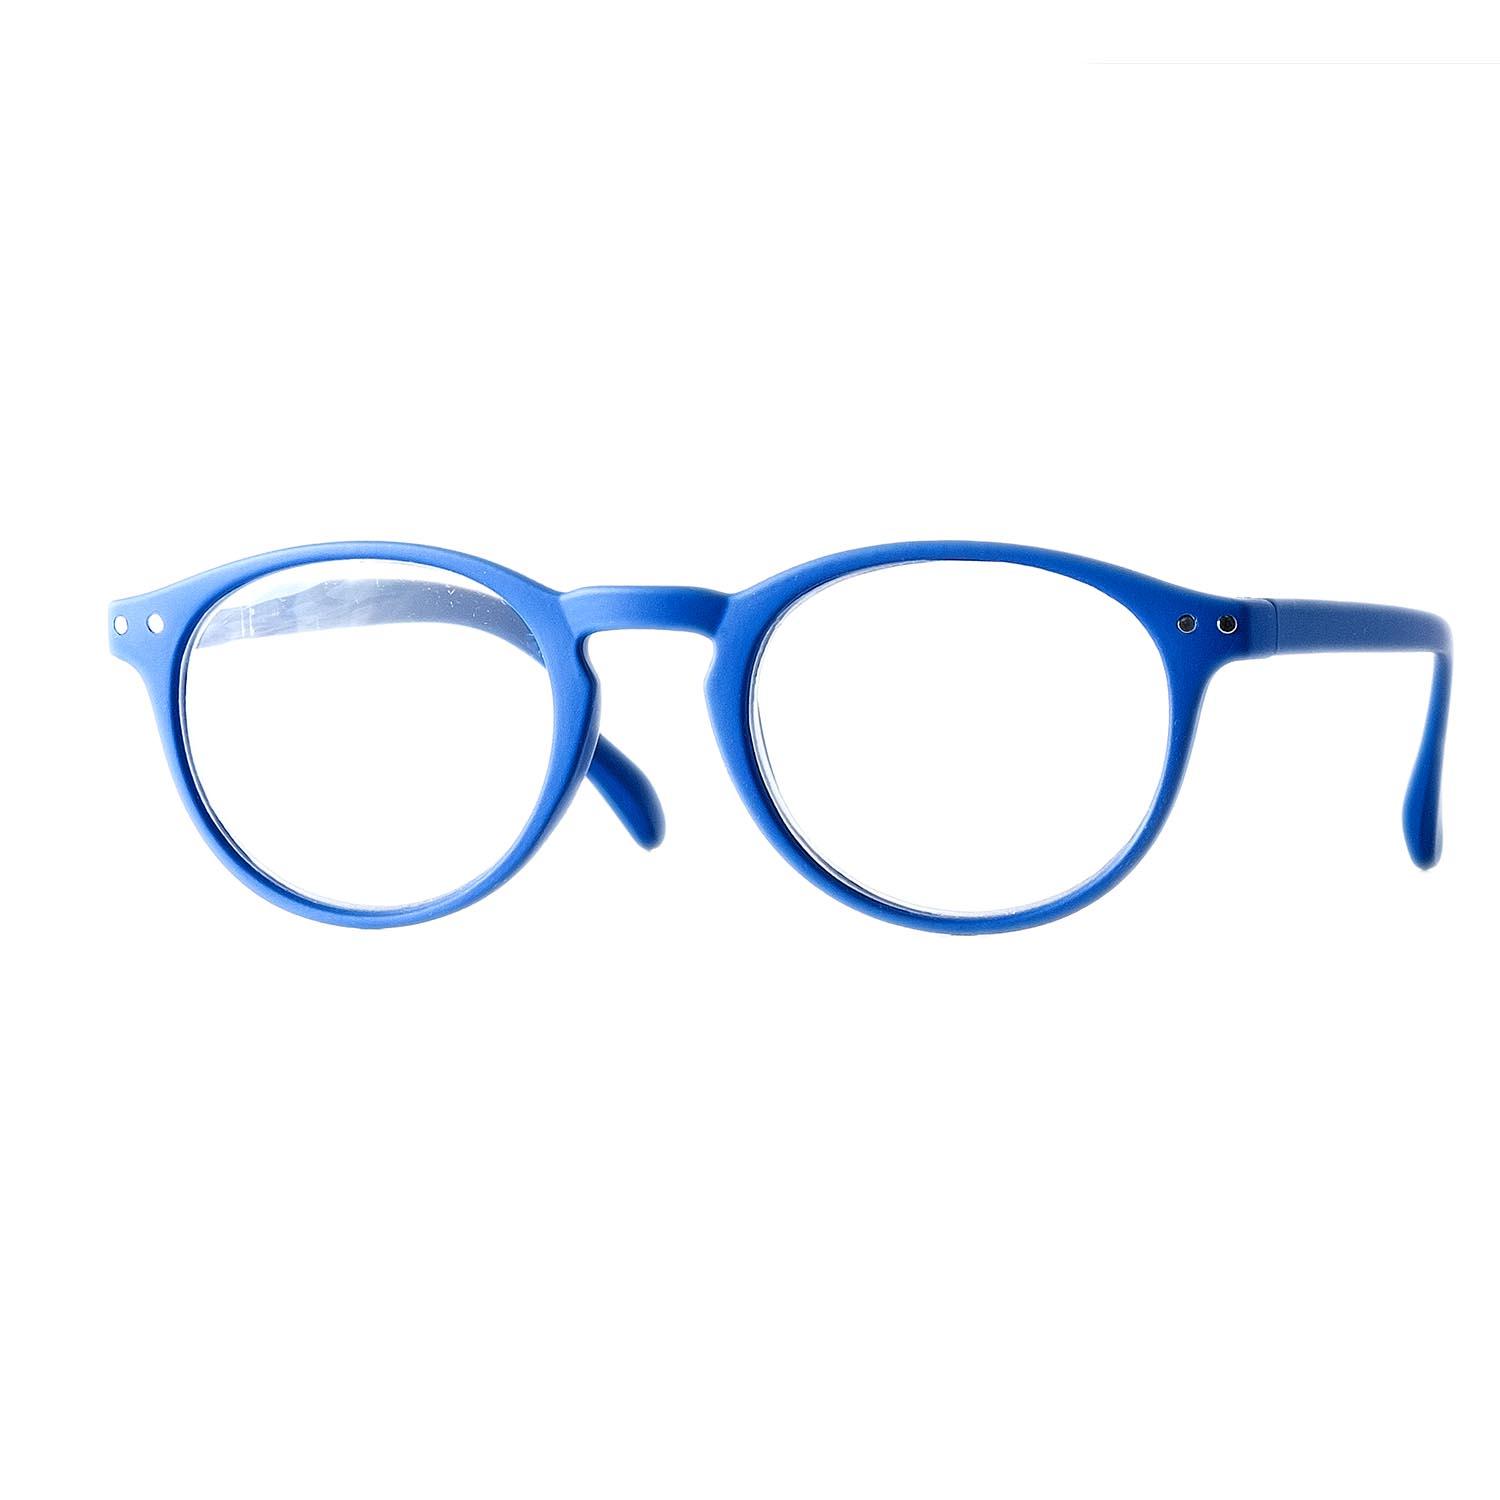 Gafas de lectura redondas color azul con aumento +2,00.